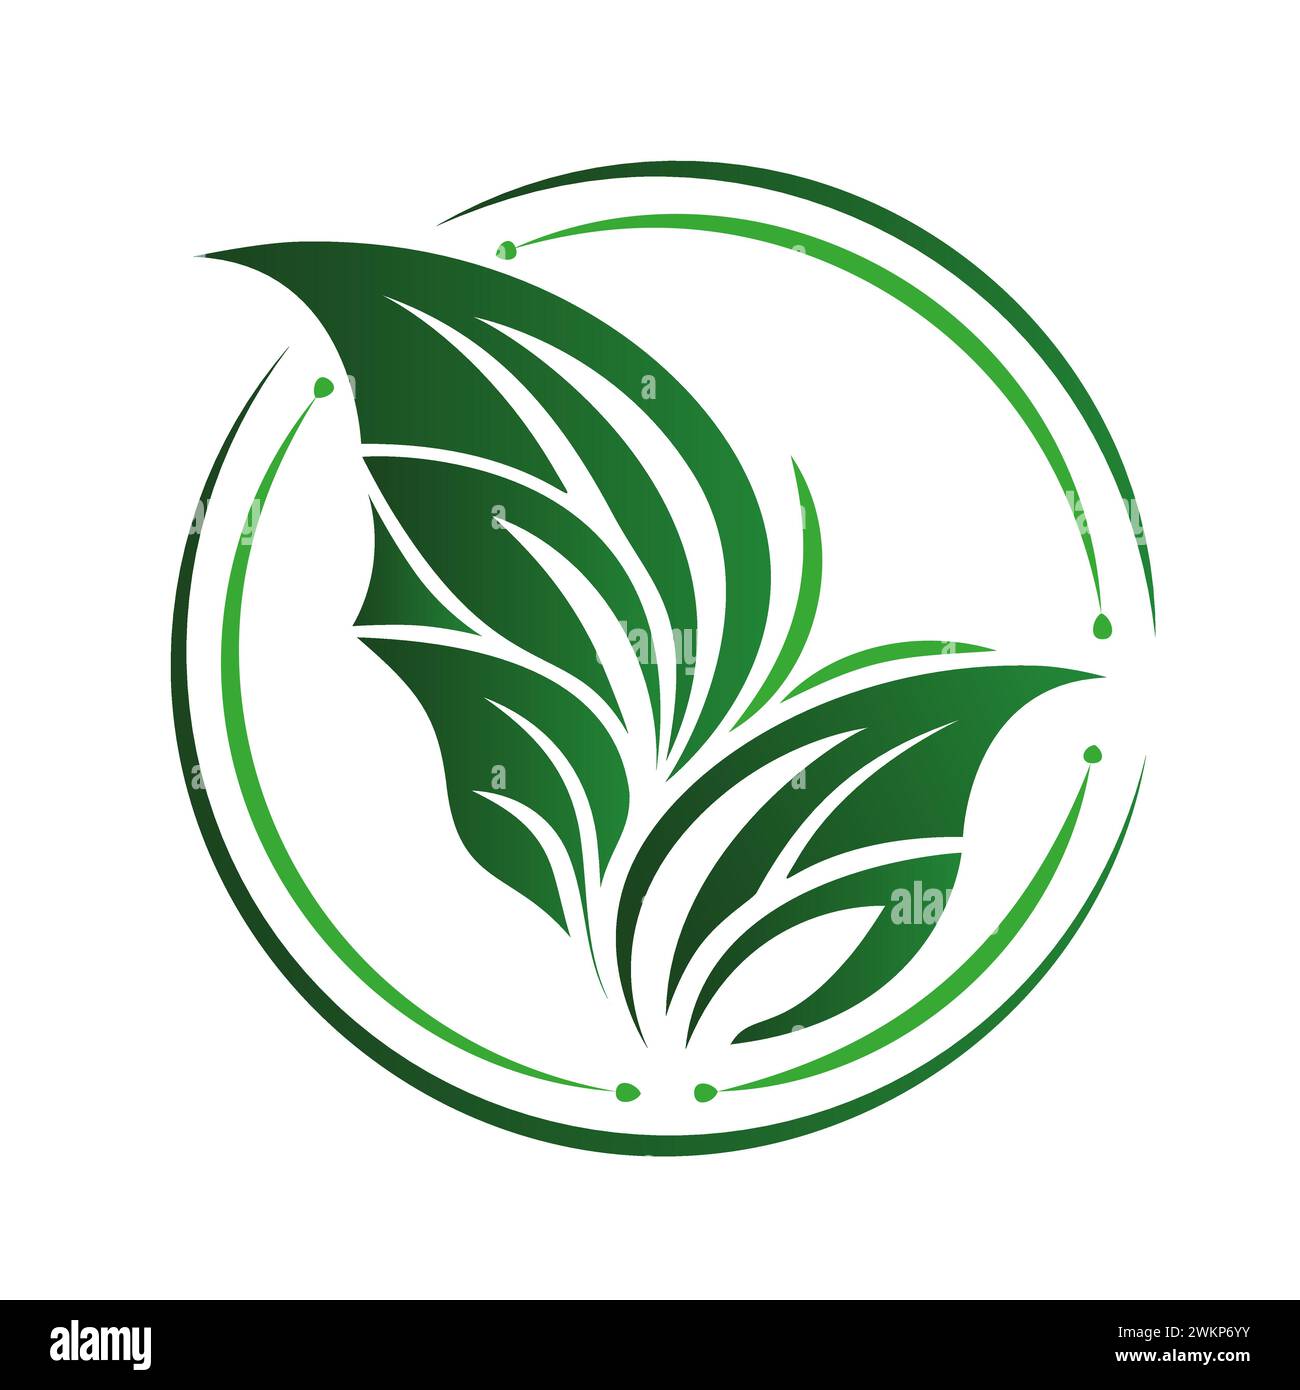 Un logotipo de hoja verde simple y estilizado que representa la naturaleza, el crecimiento y la sostenibilidad. Ilustración del Vector